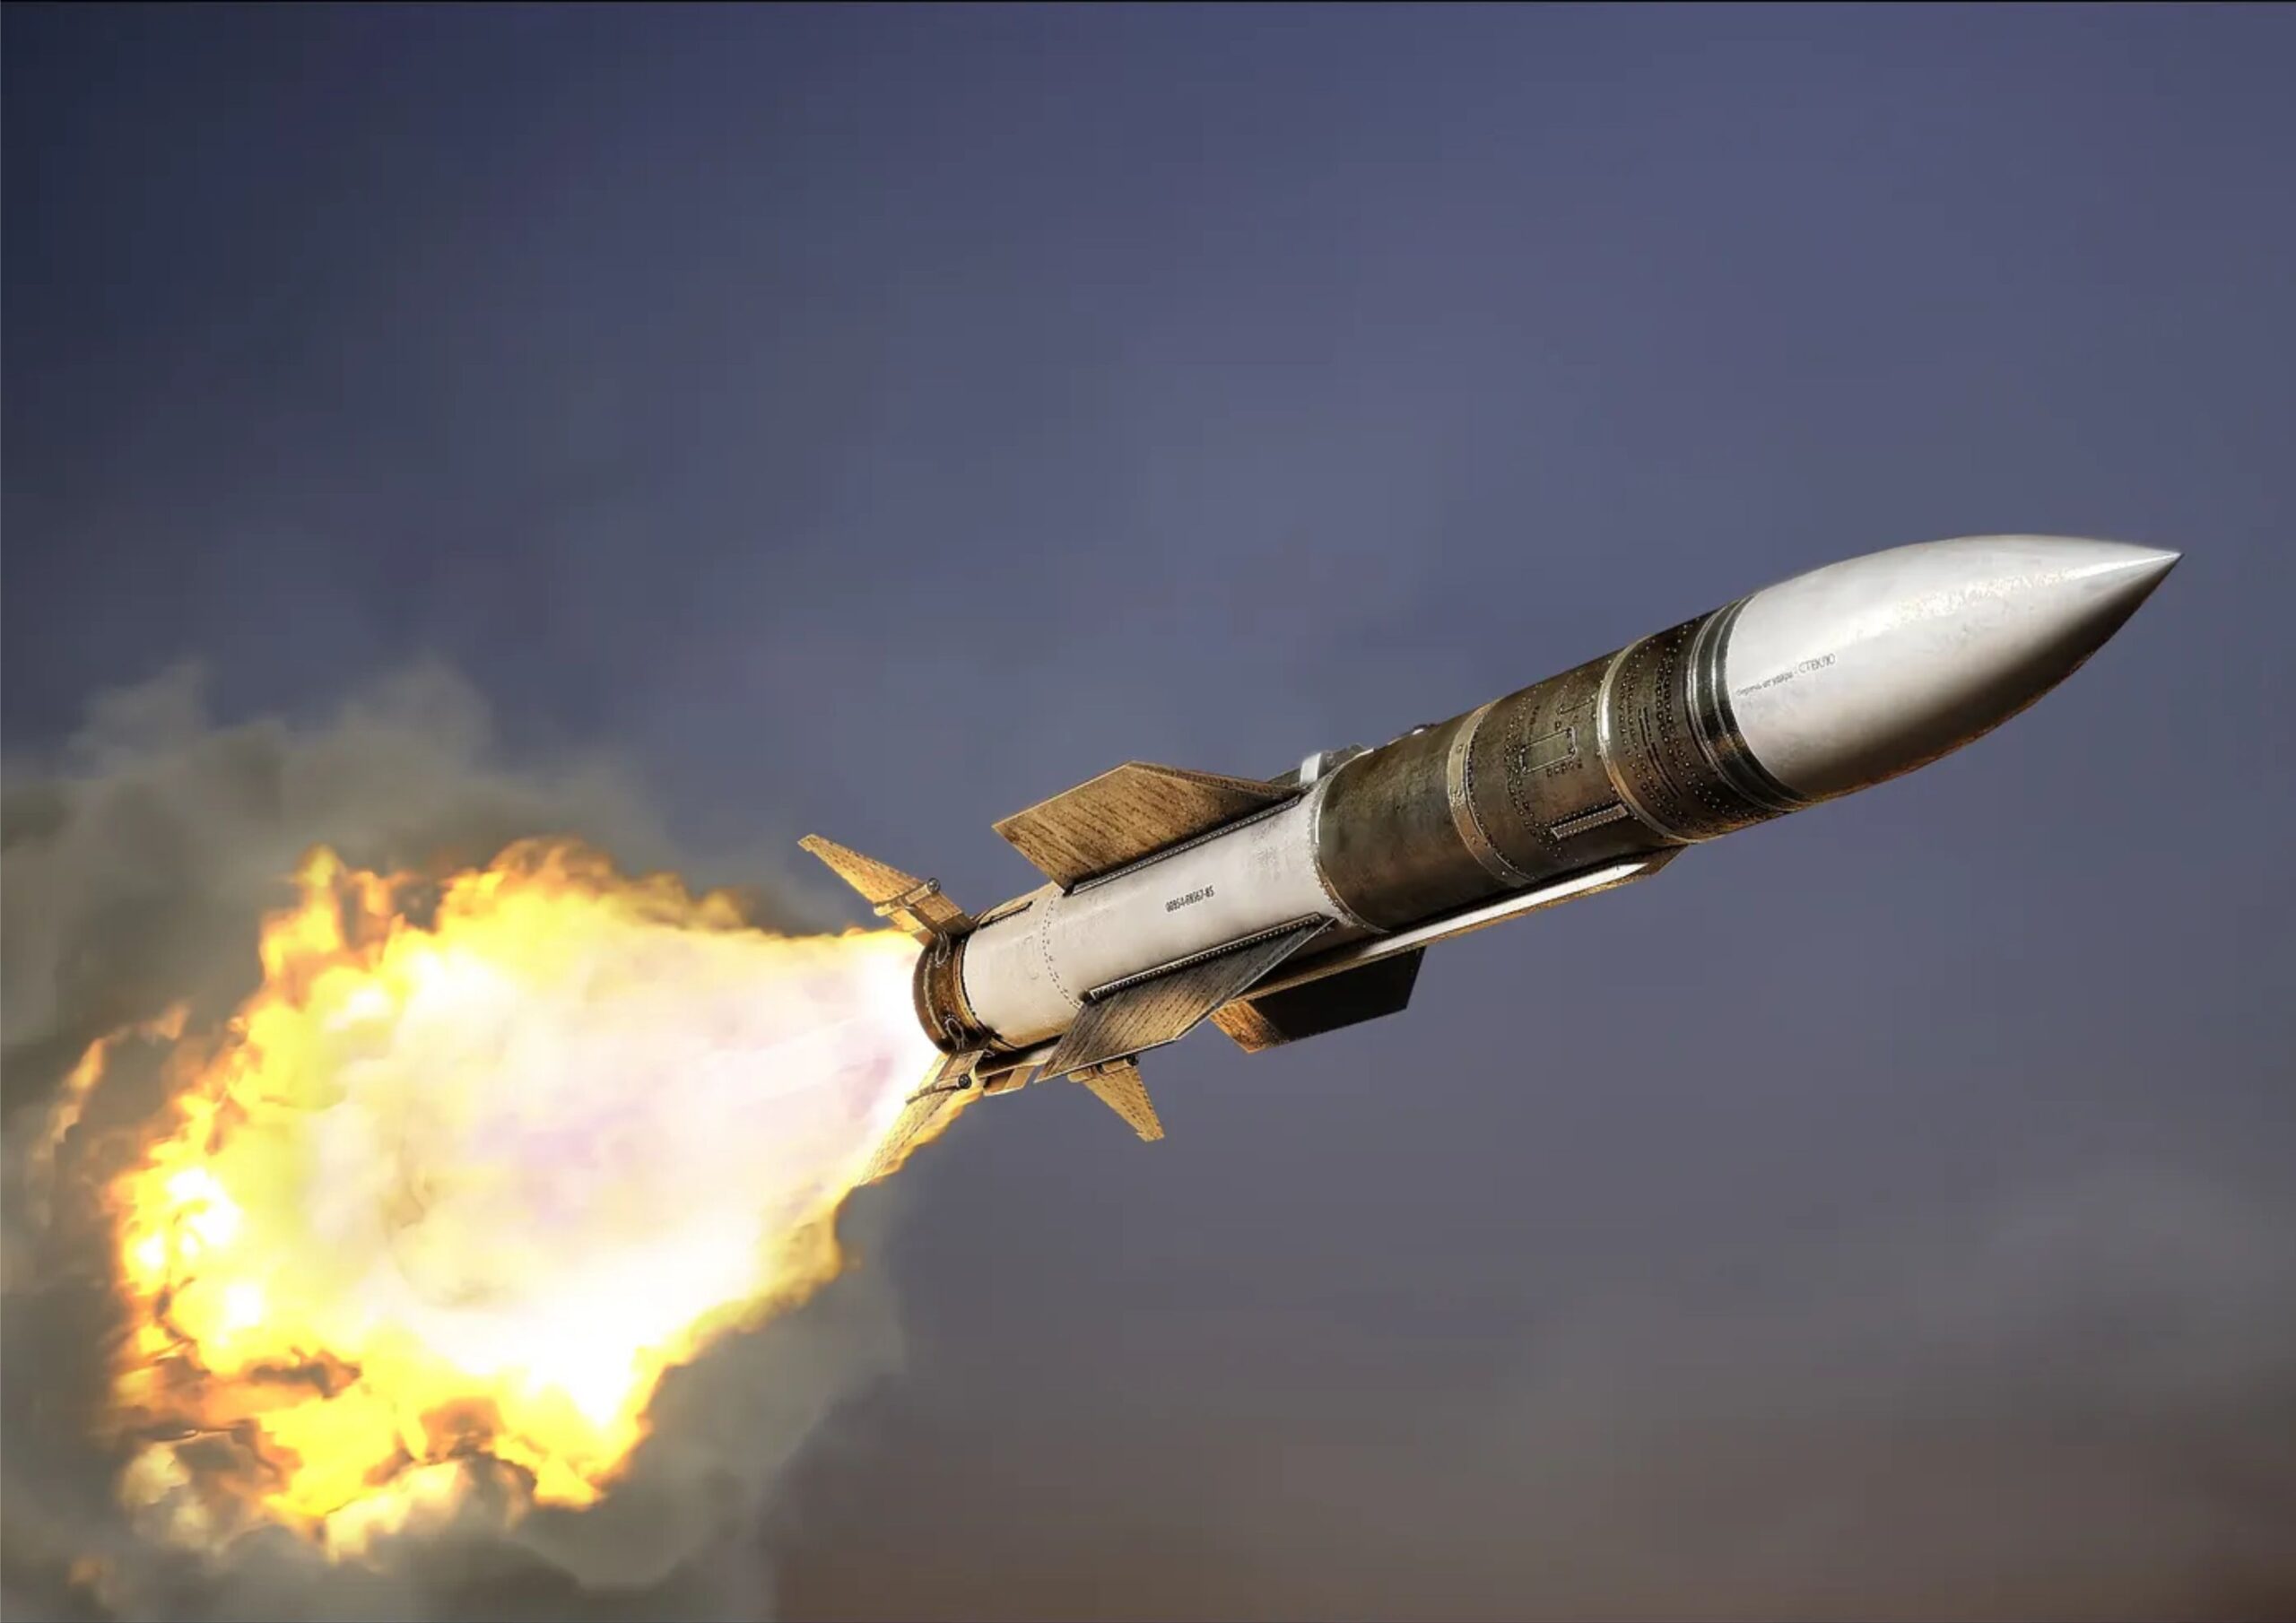 Имеет ли иран ядерное оружие. Р-37м ракета. Баллистические и крылатые ракеты. Pl-15 ракета воздух-воздух. Боеголовка Минитмен 3.